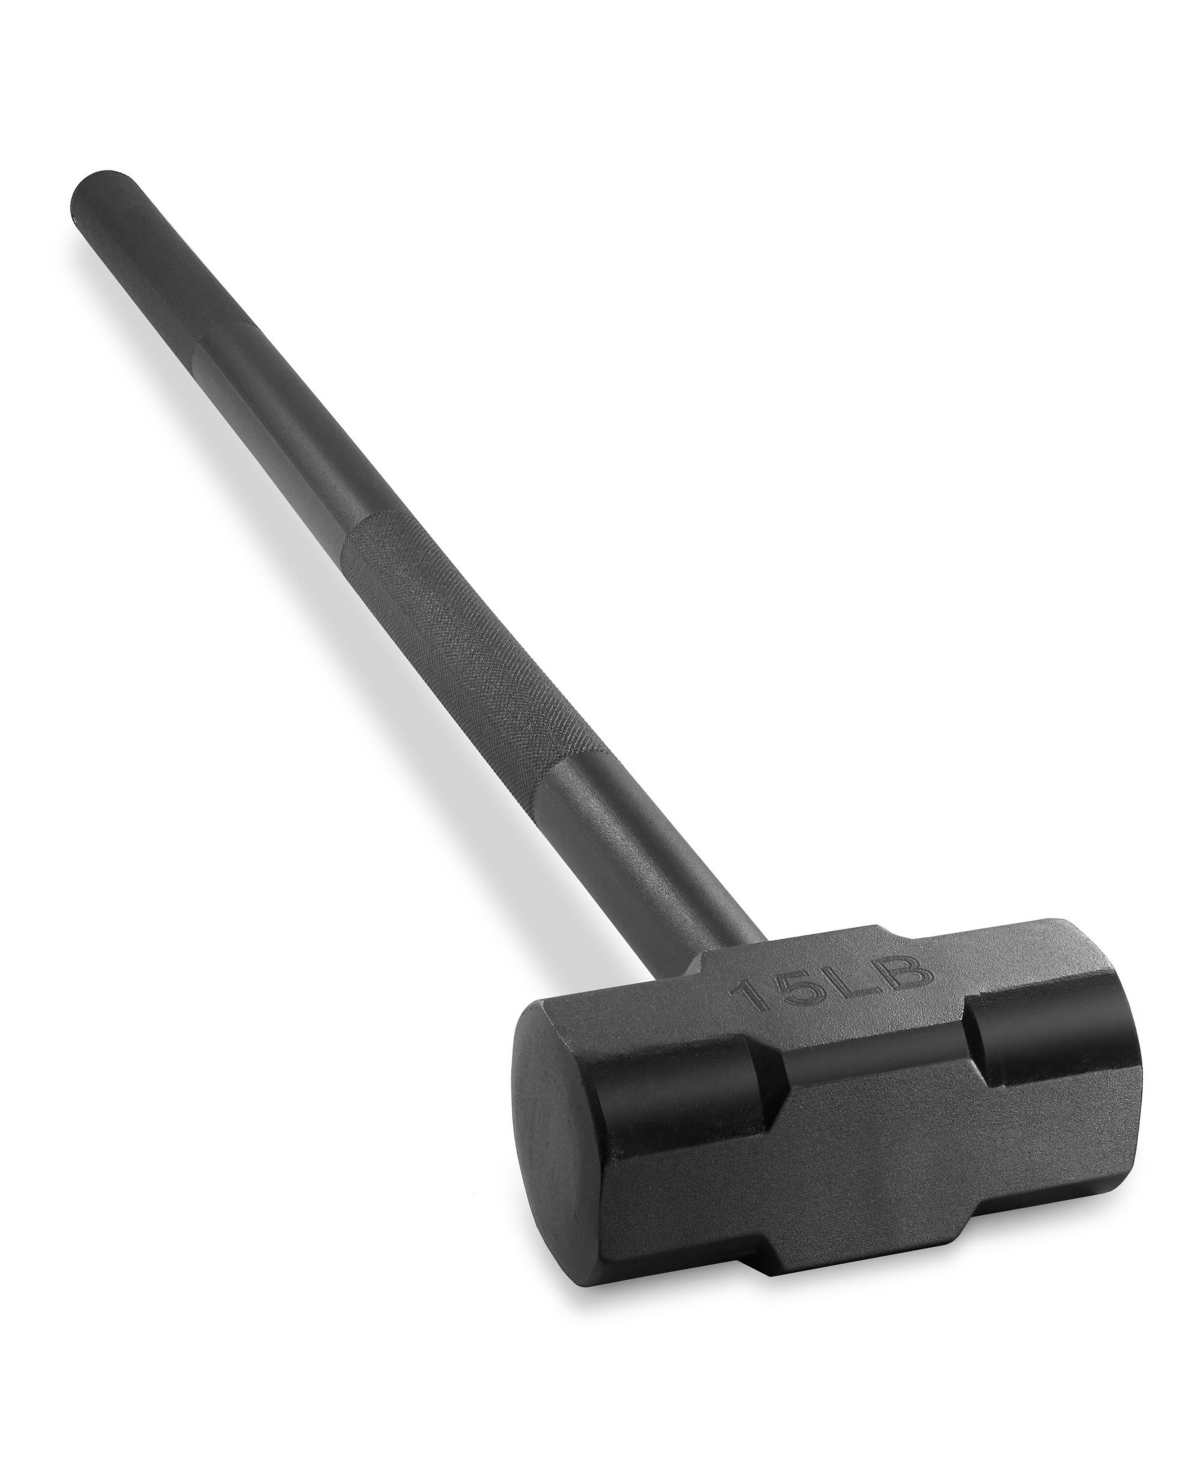 Fitness Hammer, 15 Lb - Steel Hammer for Strength Training - Black